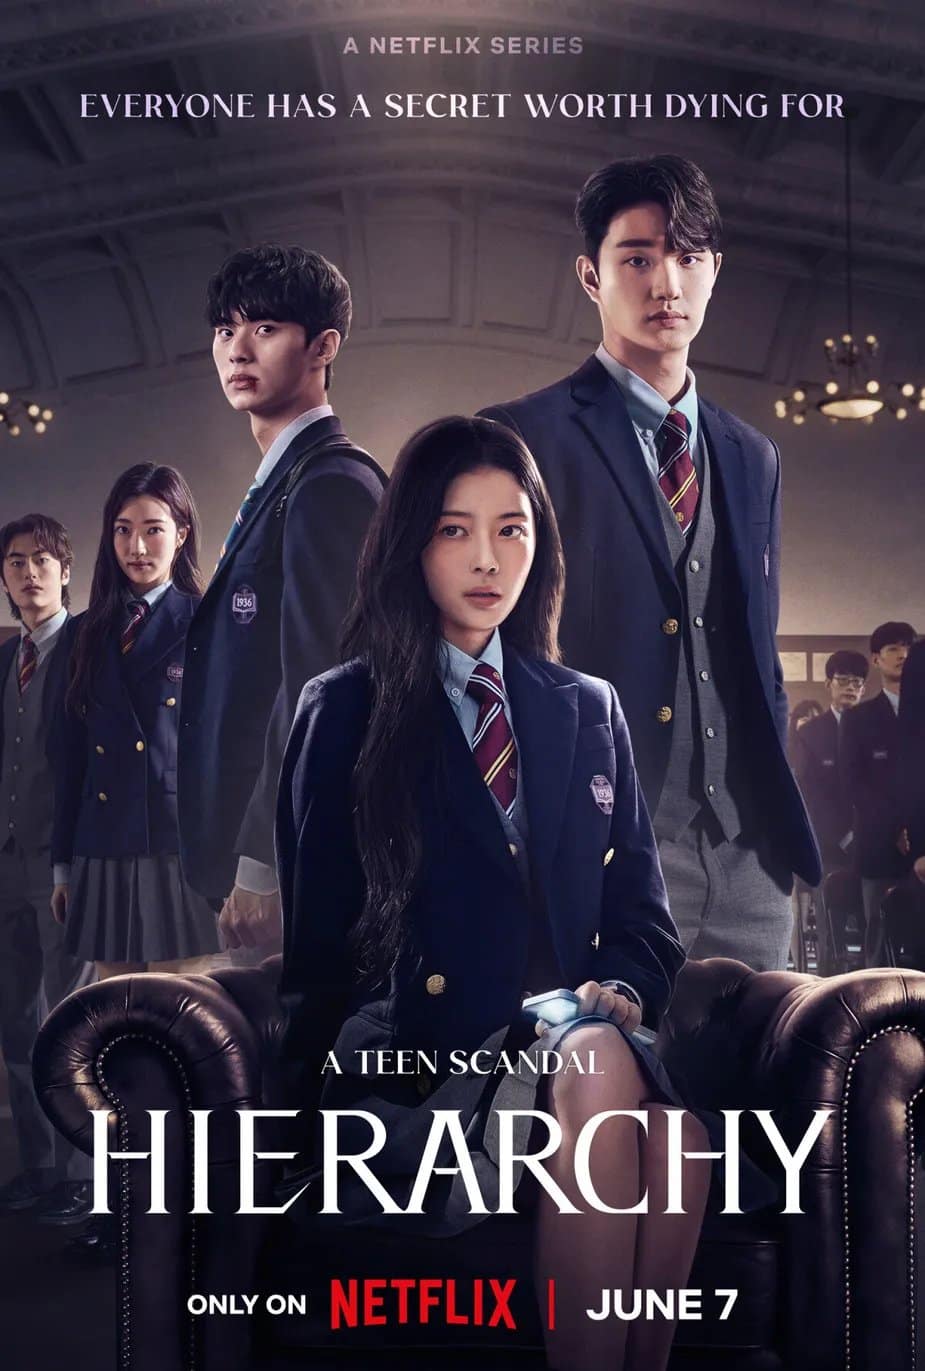 Корейская дорама Netflix "Иерархия" вызывает неоднозначные реакции из-за "шокирующих" отношений персонажей